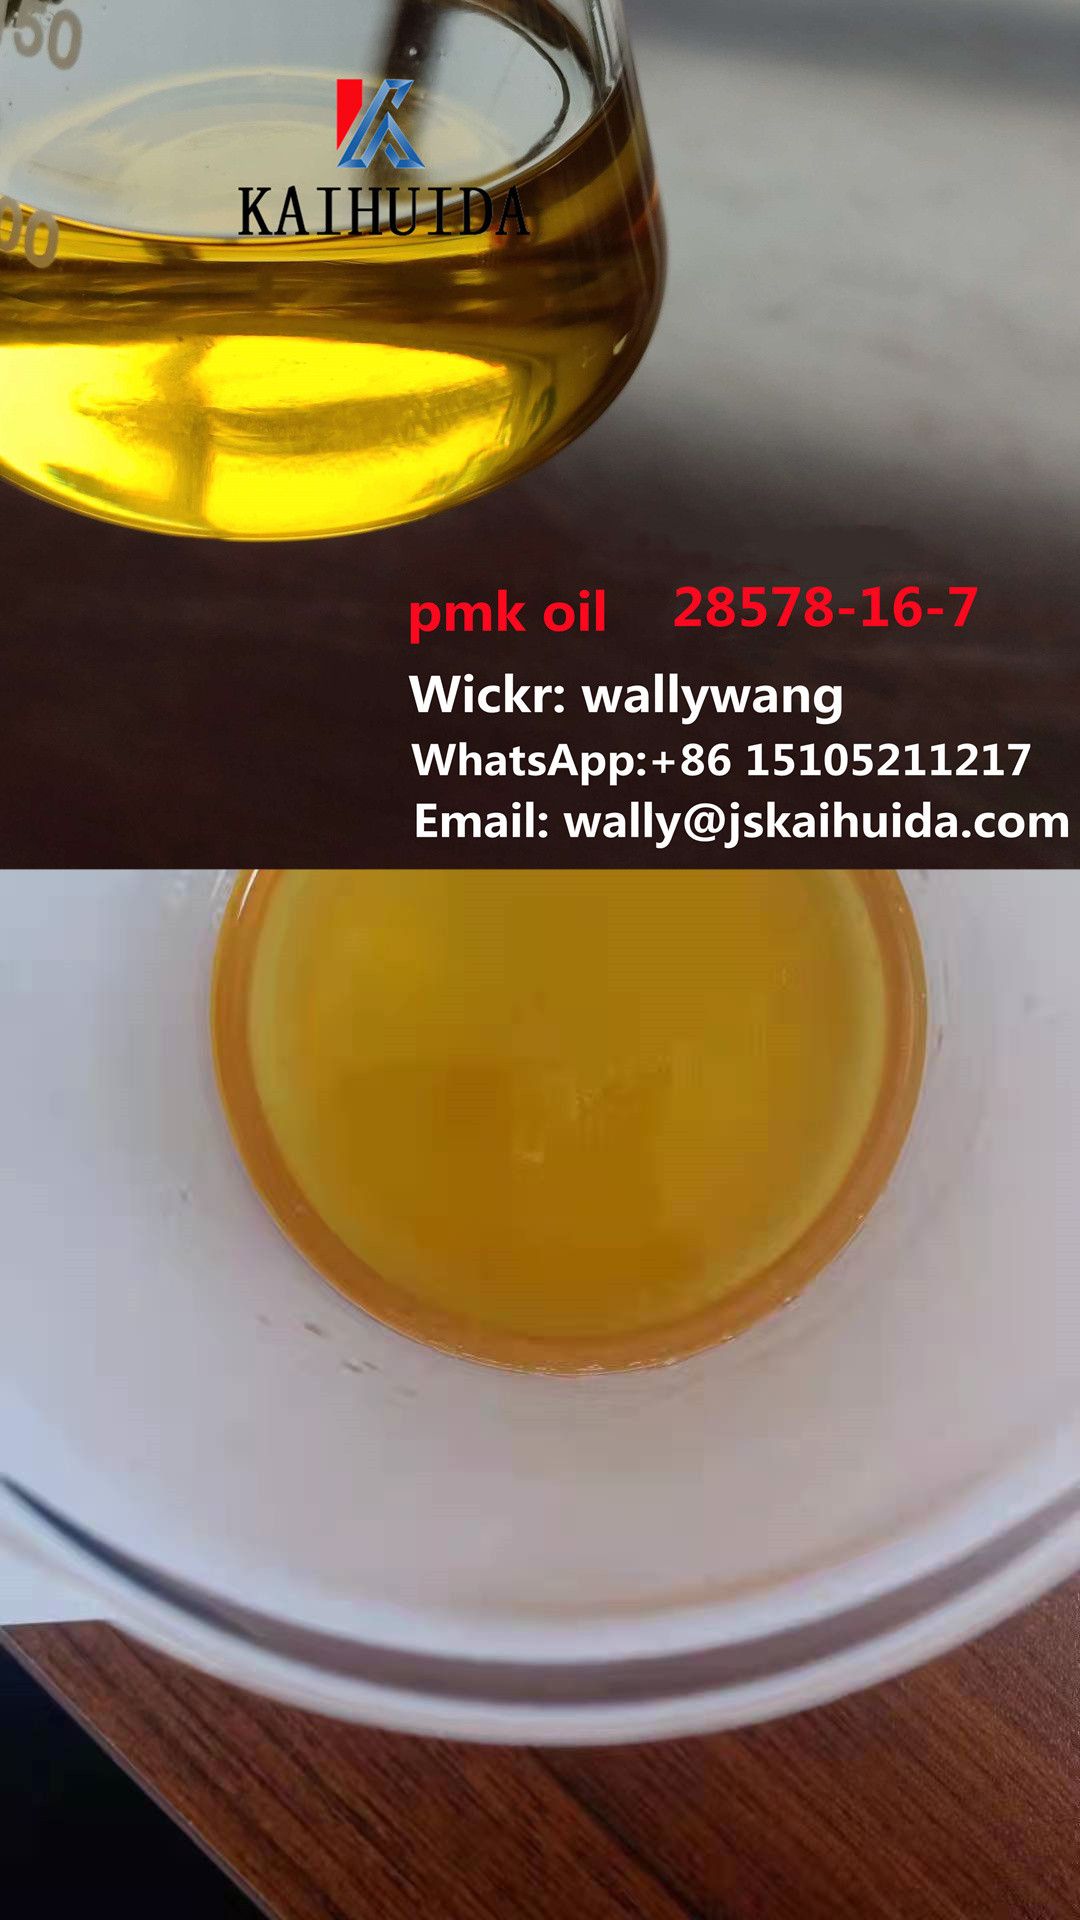 Pmk bmk oil CAS 28578-16-7, 20320-59-6Wickr:wallywang,